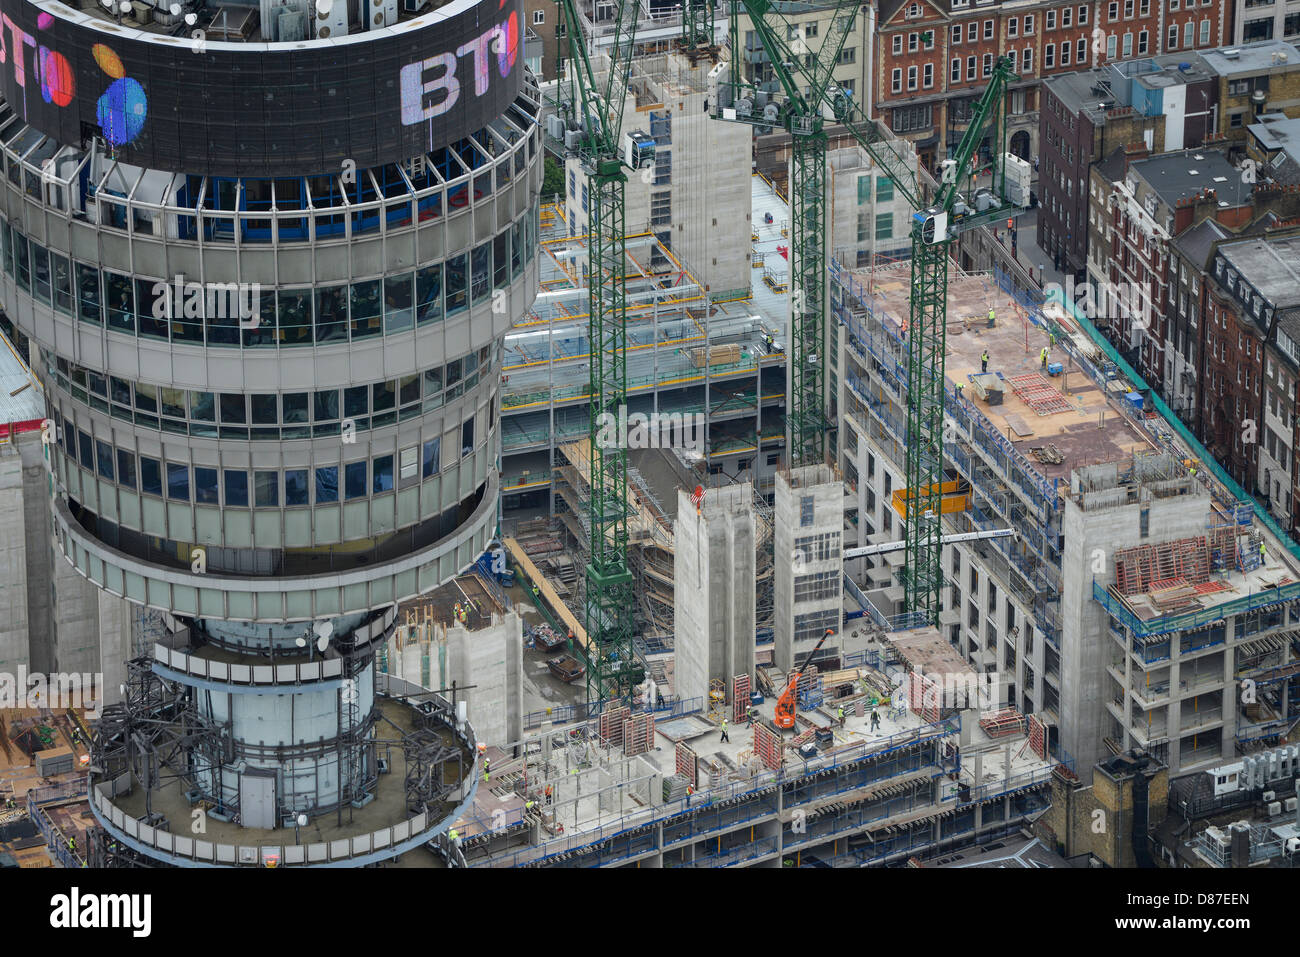 Fotografia aerea di lavori di costruzione e il BT Tower a Londra Foto Stock